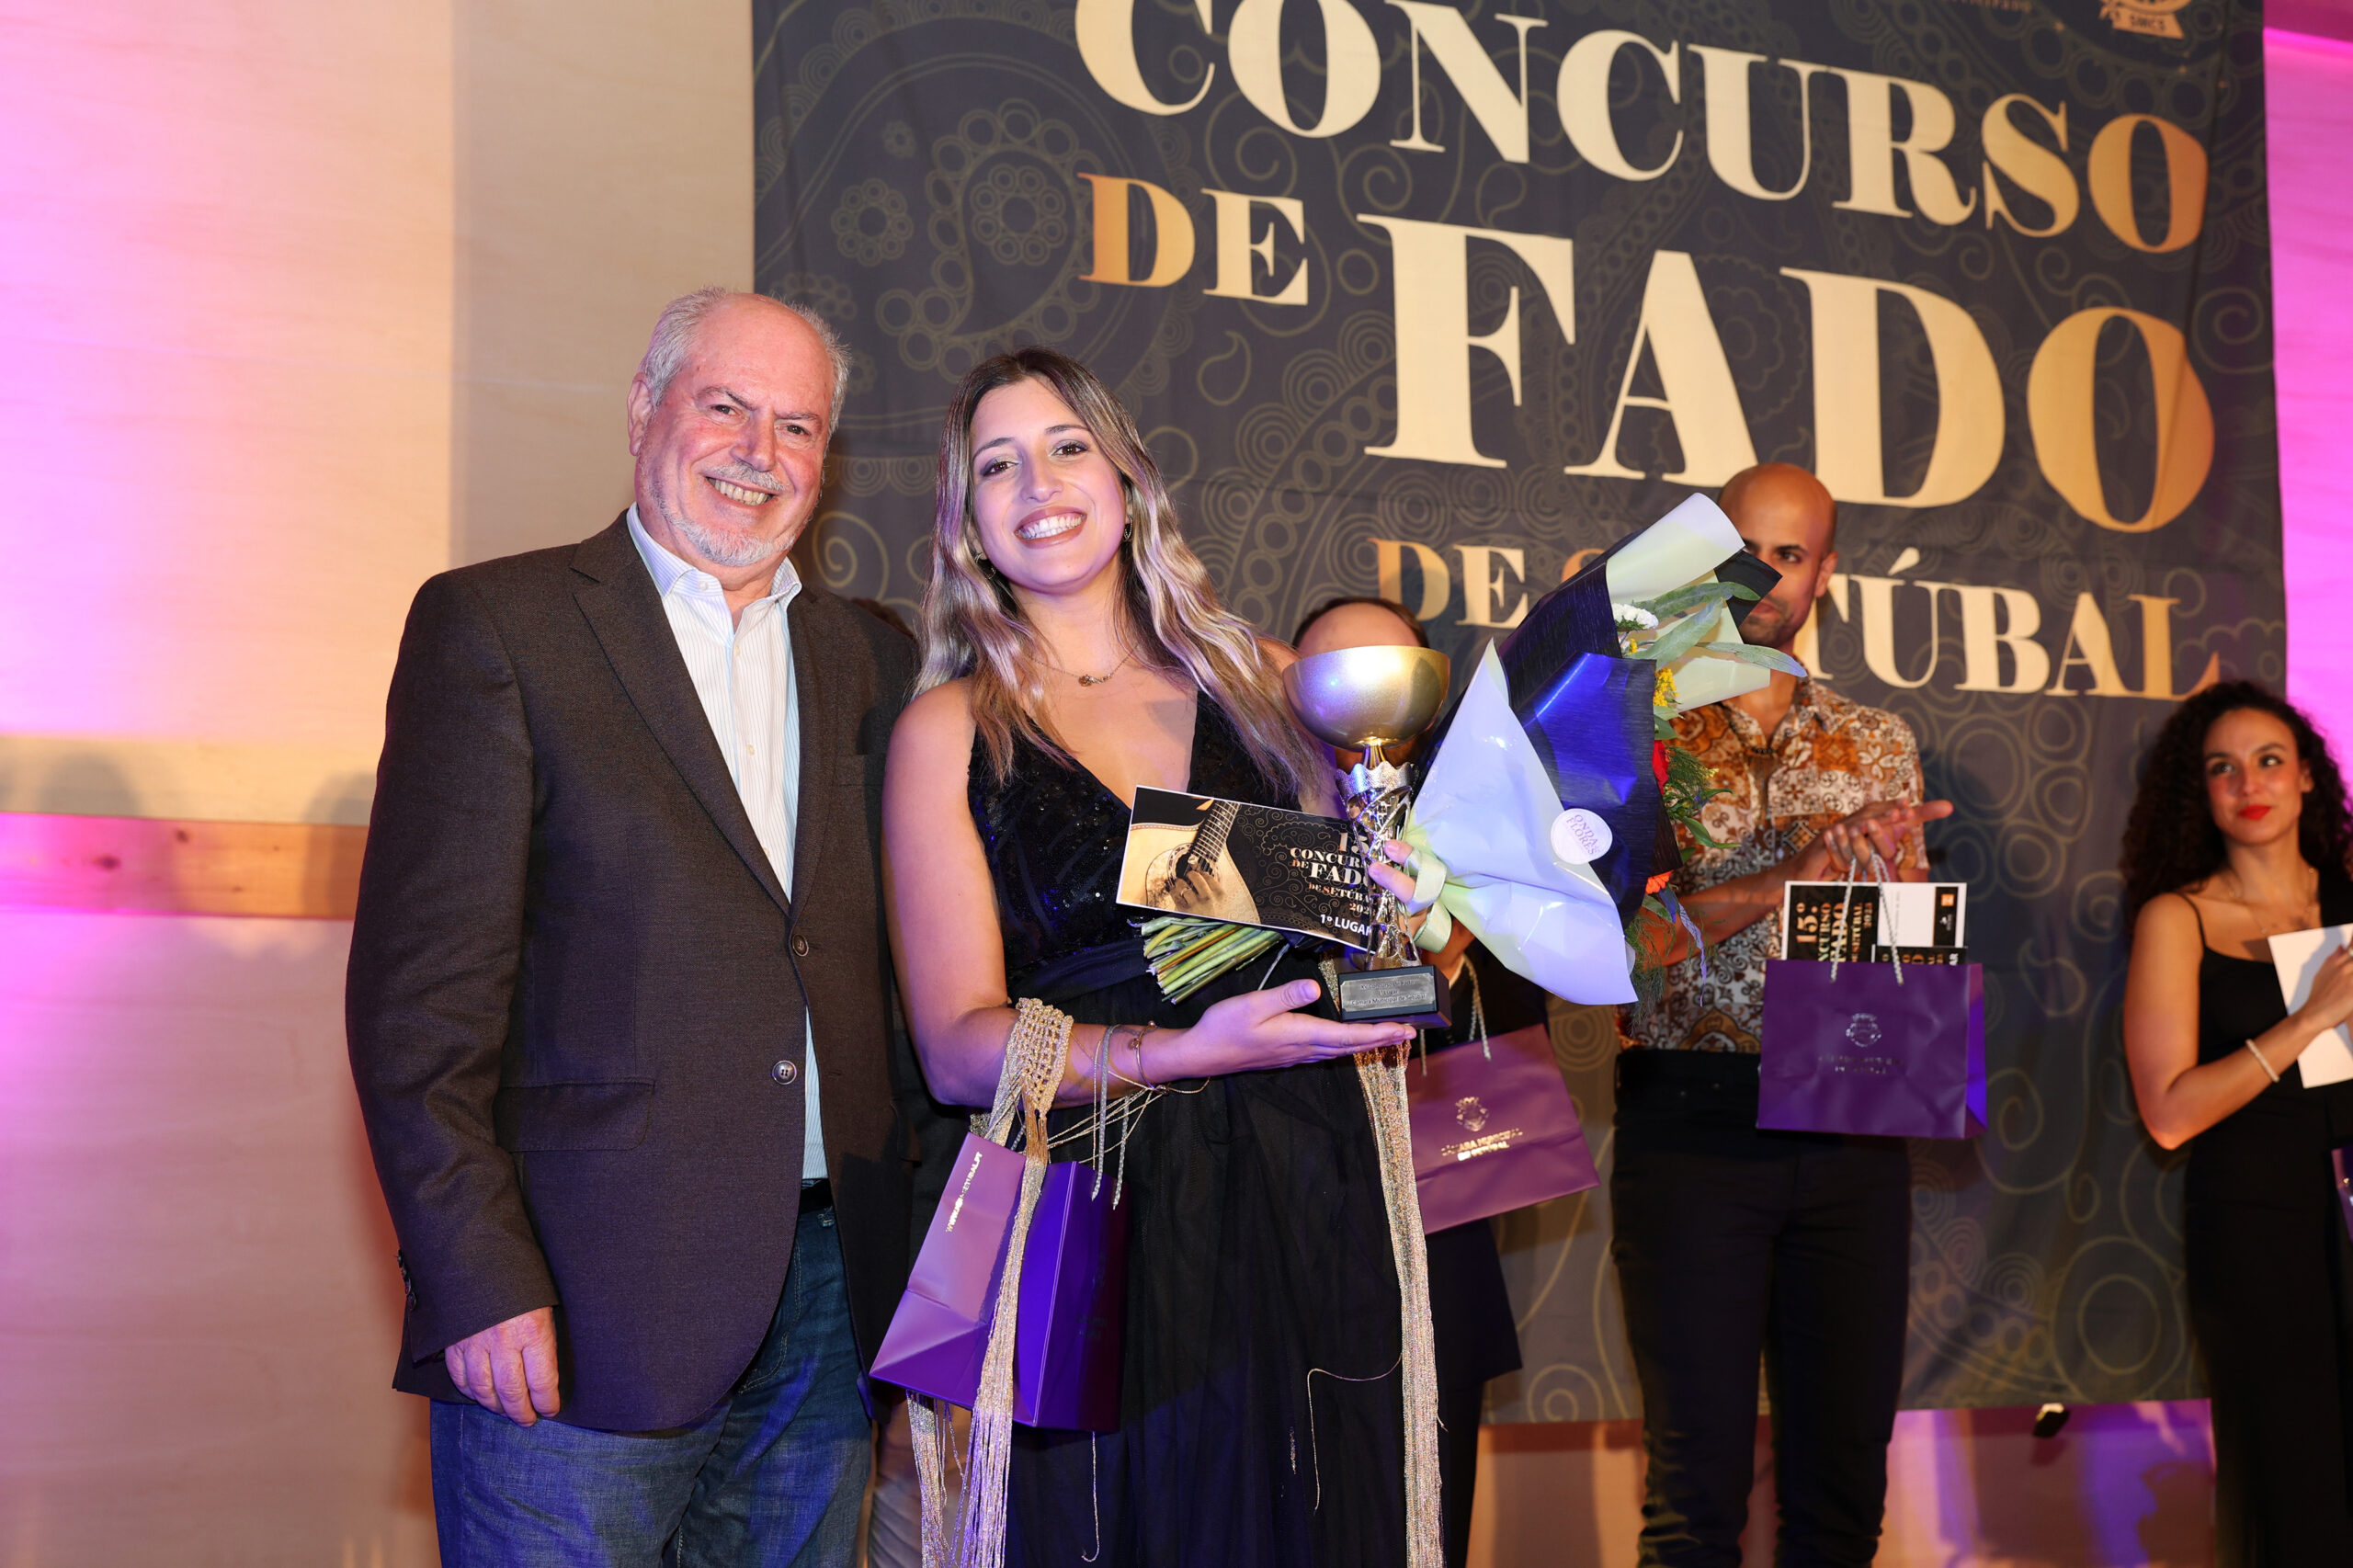 XV Concurso de Fado de Setúbal - presidente da Câmara Municipal de Setúbal, André Martins, e a vencedora Sara Coito